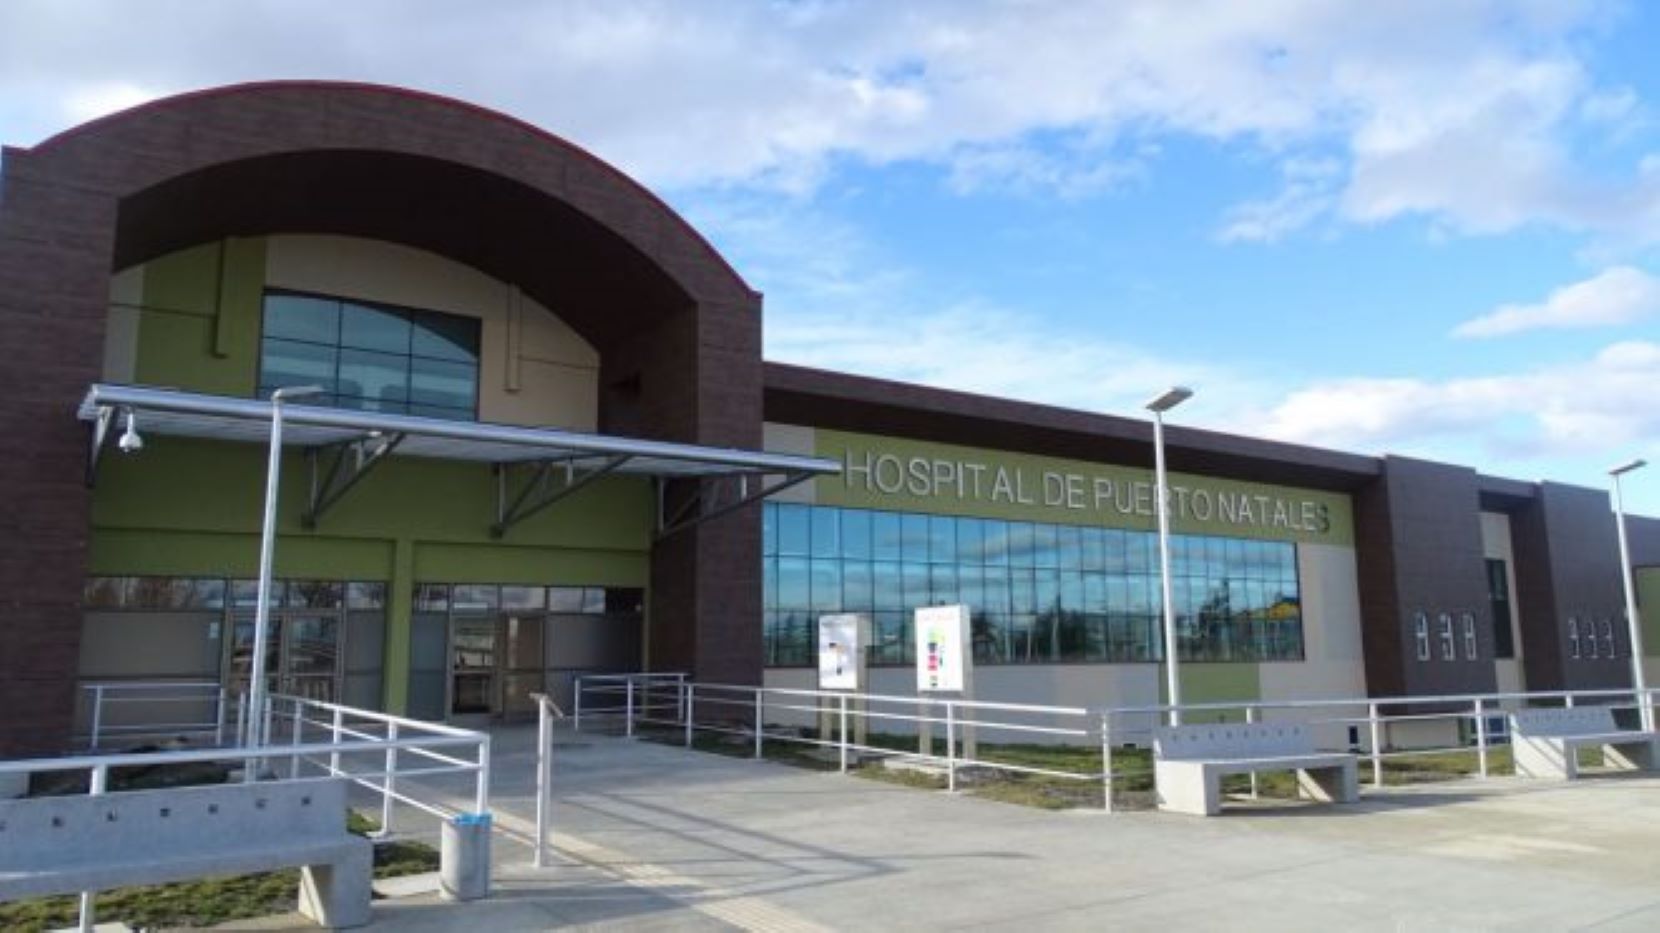 FENATS de Puerto Natales se pronuncia ante falta de médicos especialistas en el Hospital Augusto Essmann